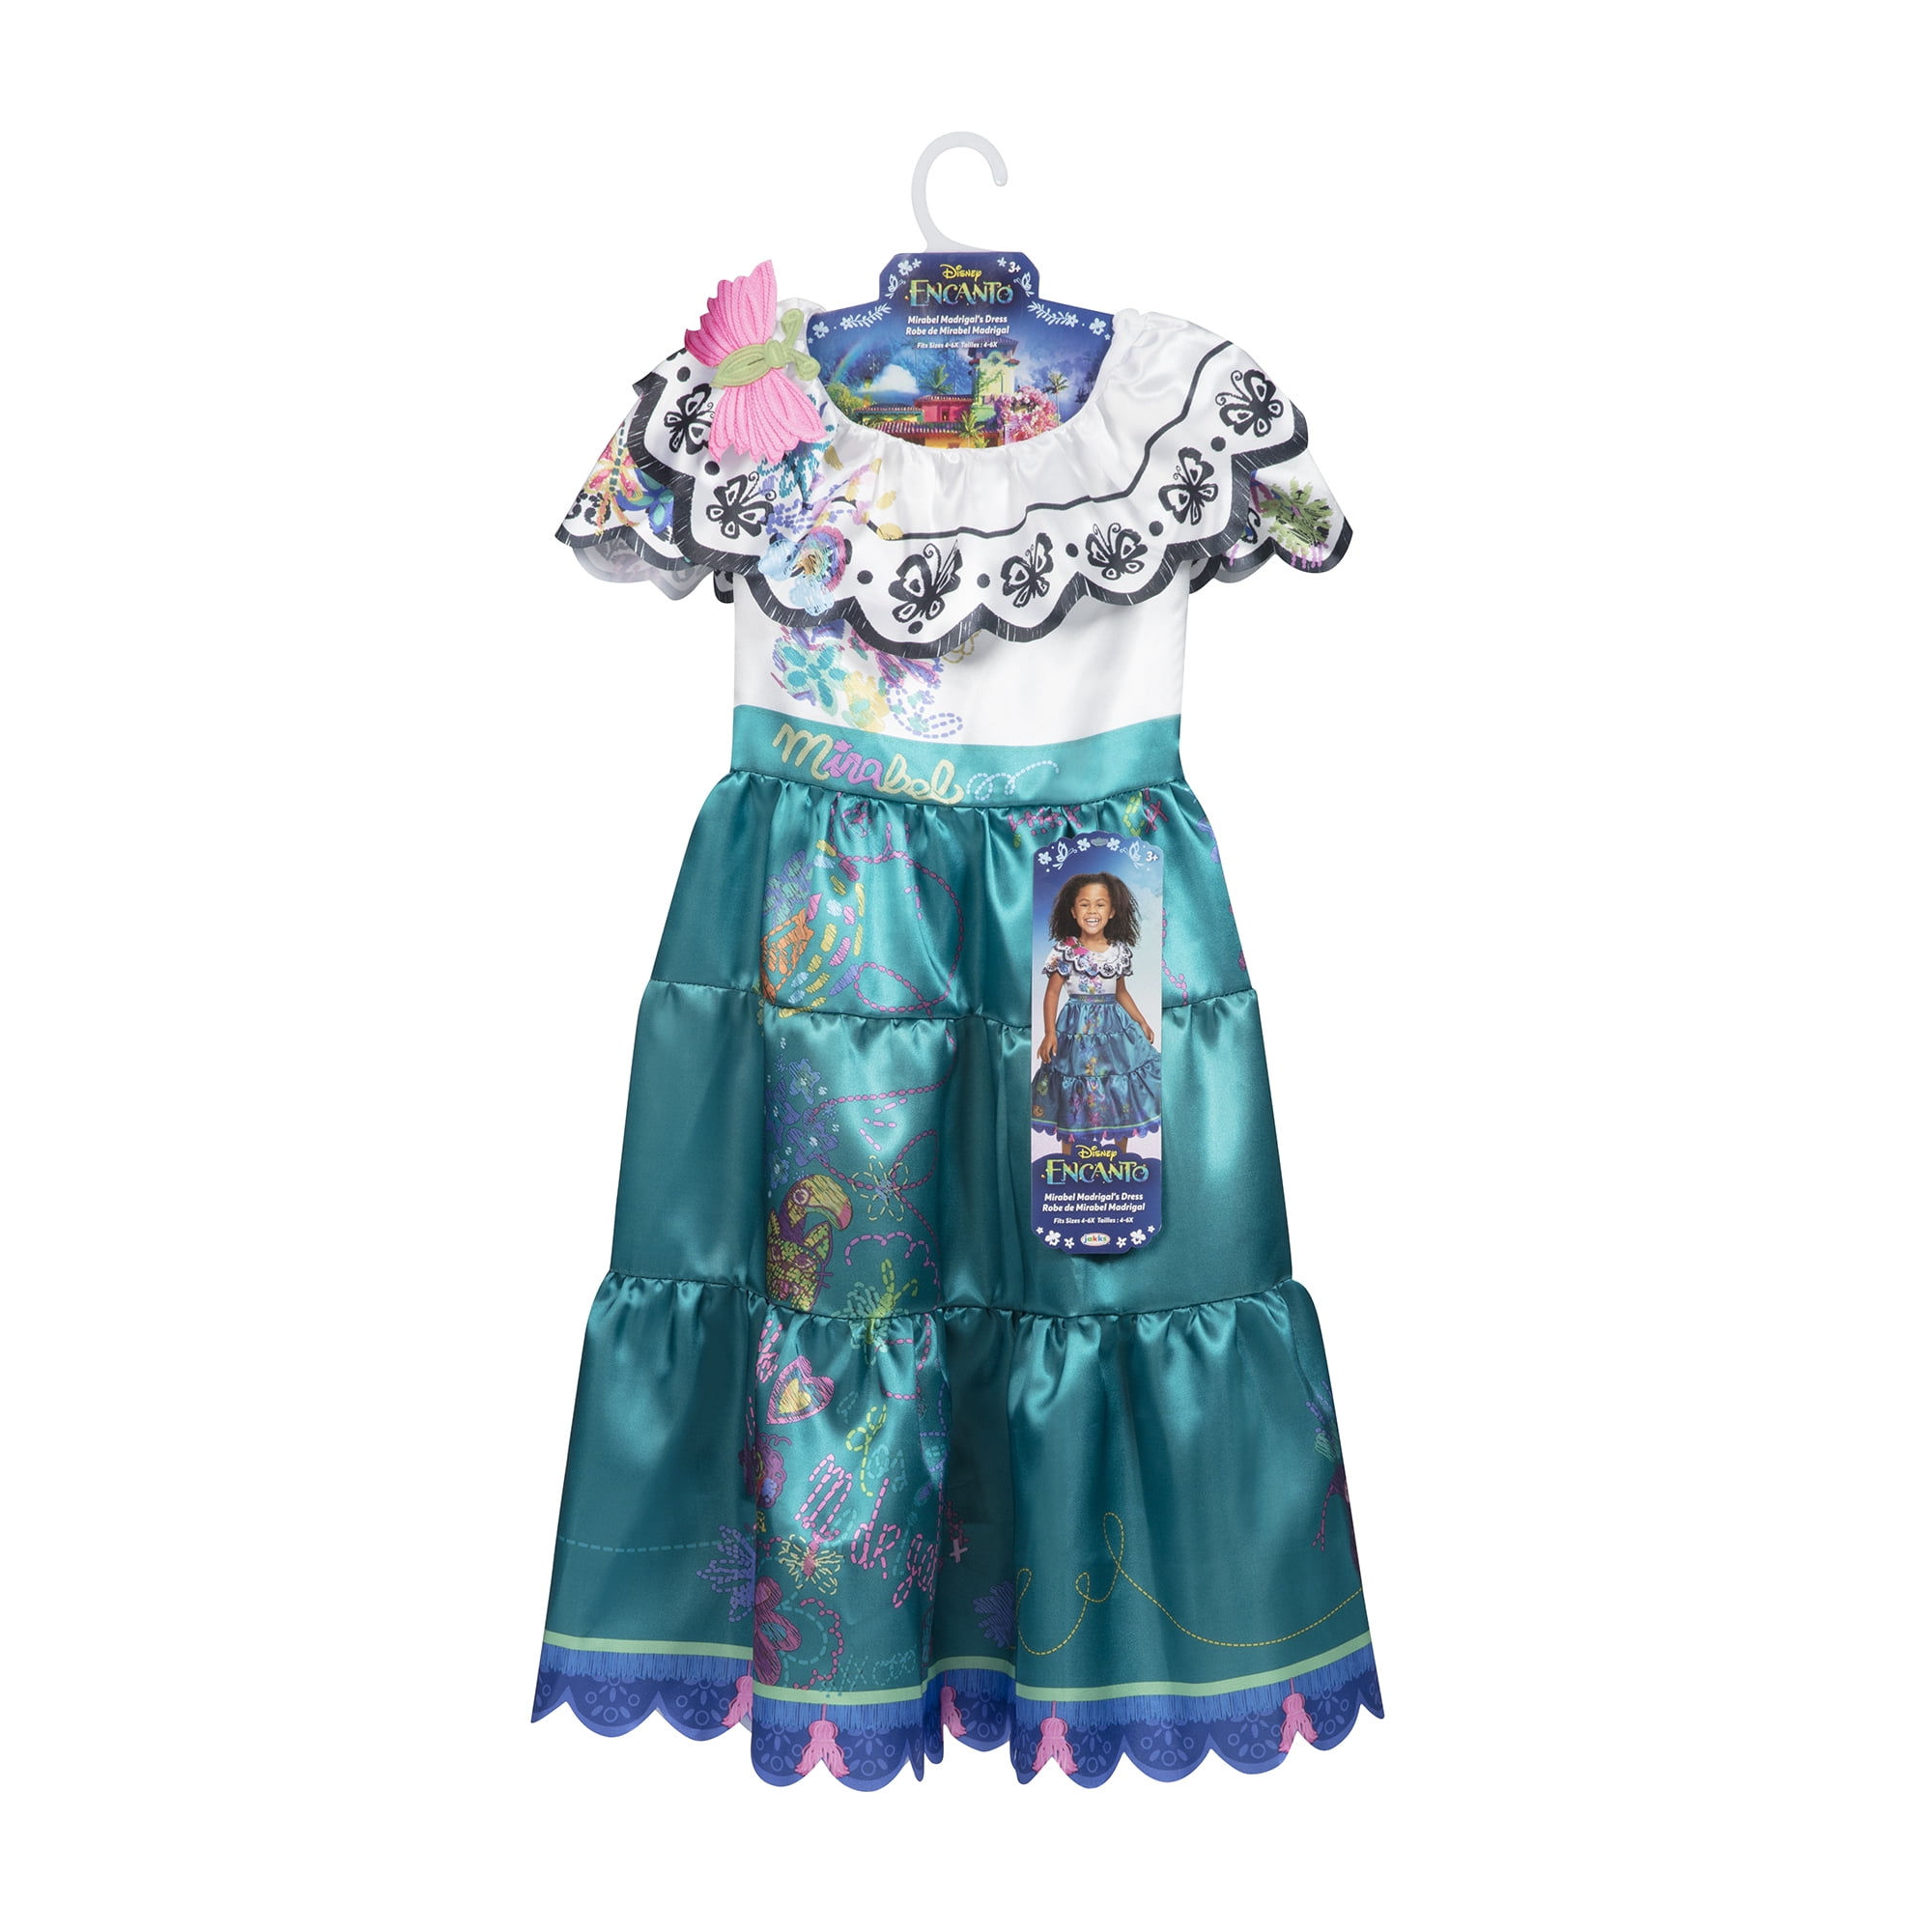 Encanto Disney Mirabel Girl's Fancy-Dress Costume, S (4-6X) - Walmart.com